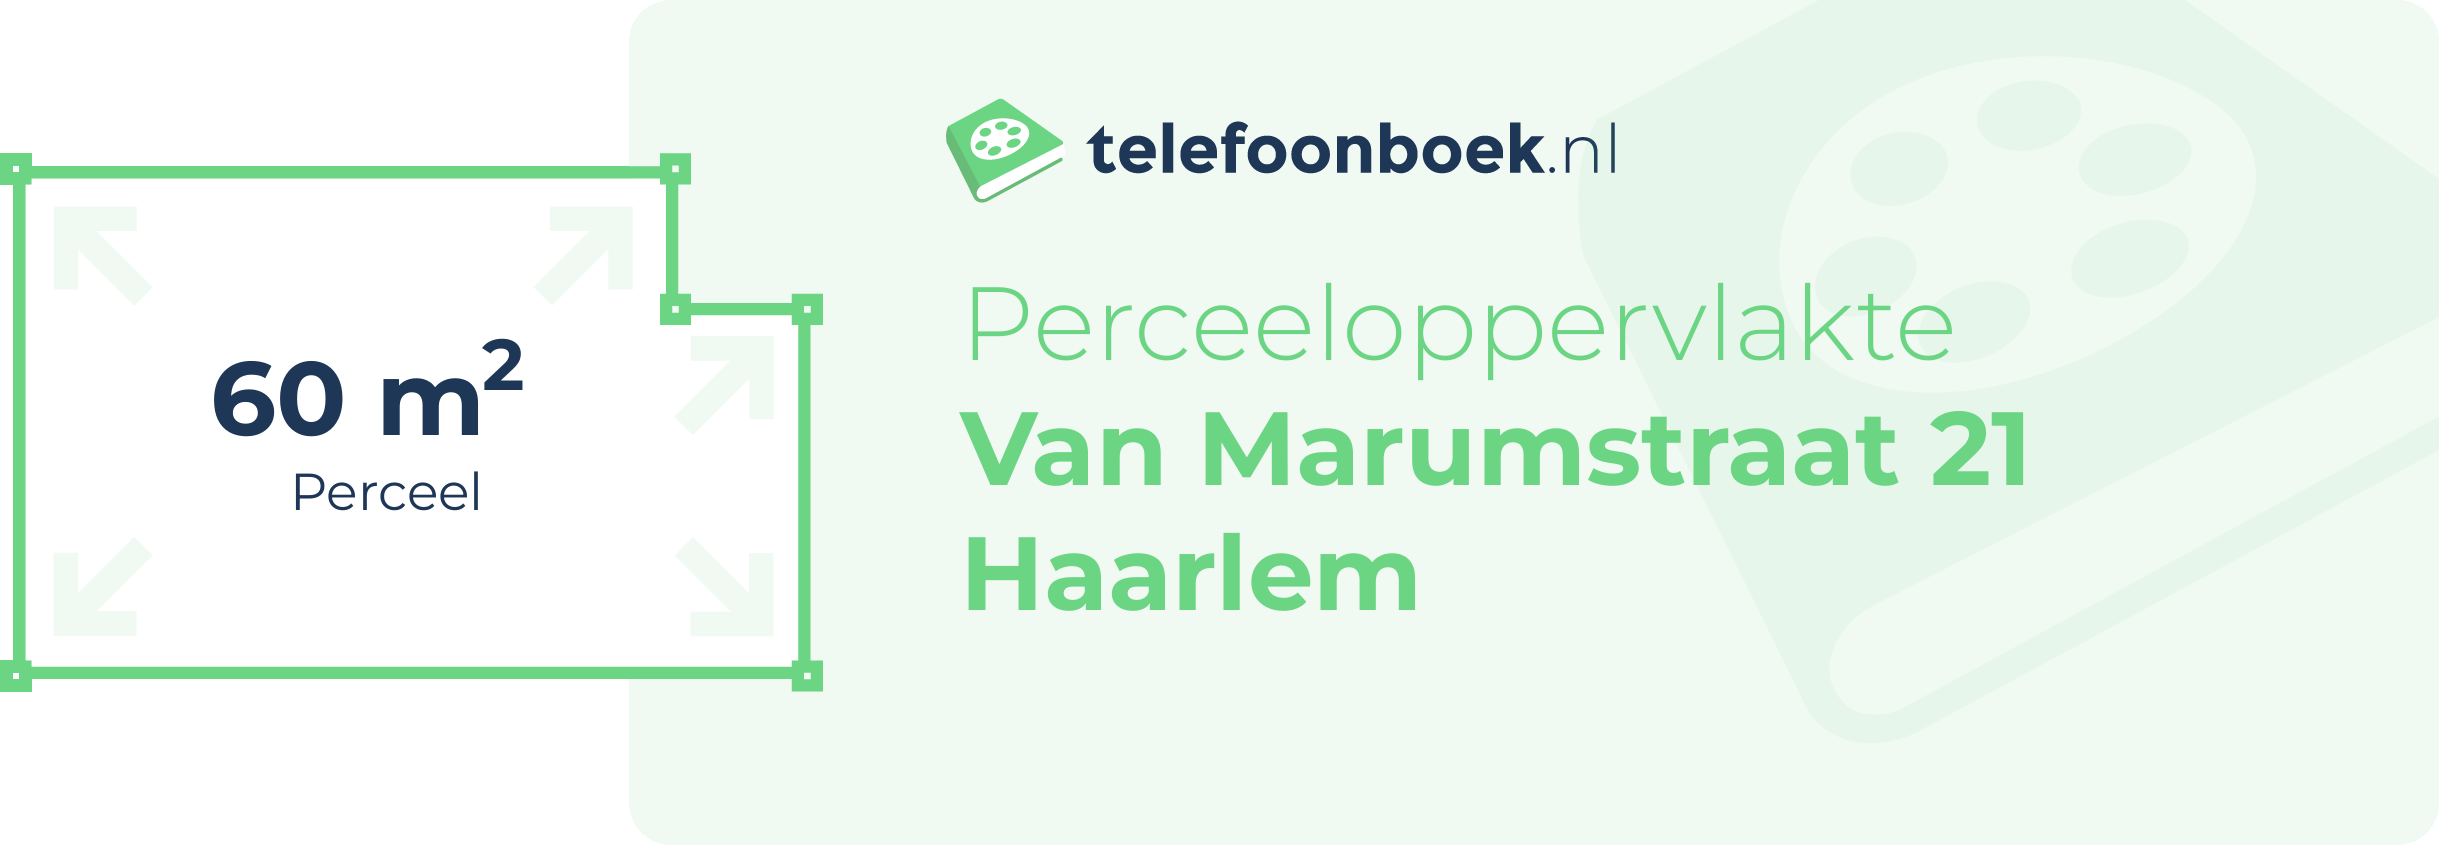 Perceeloppervlakte Van Marumstraat 21 Haarlem